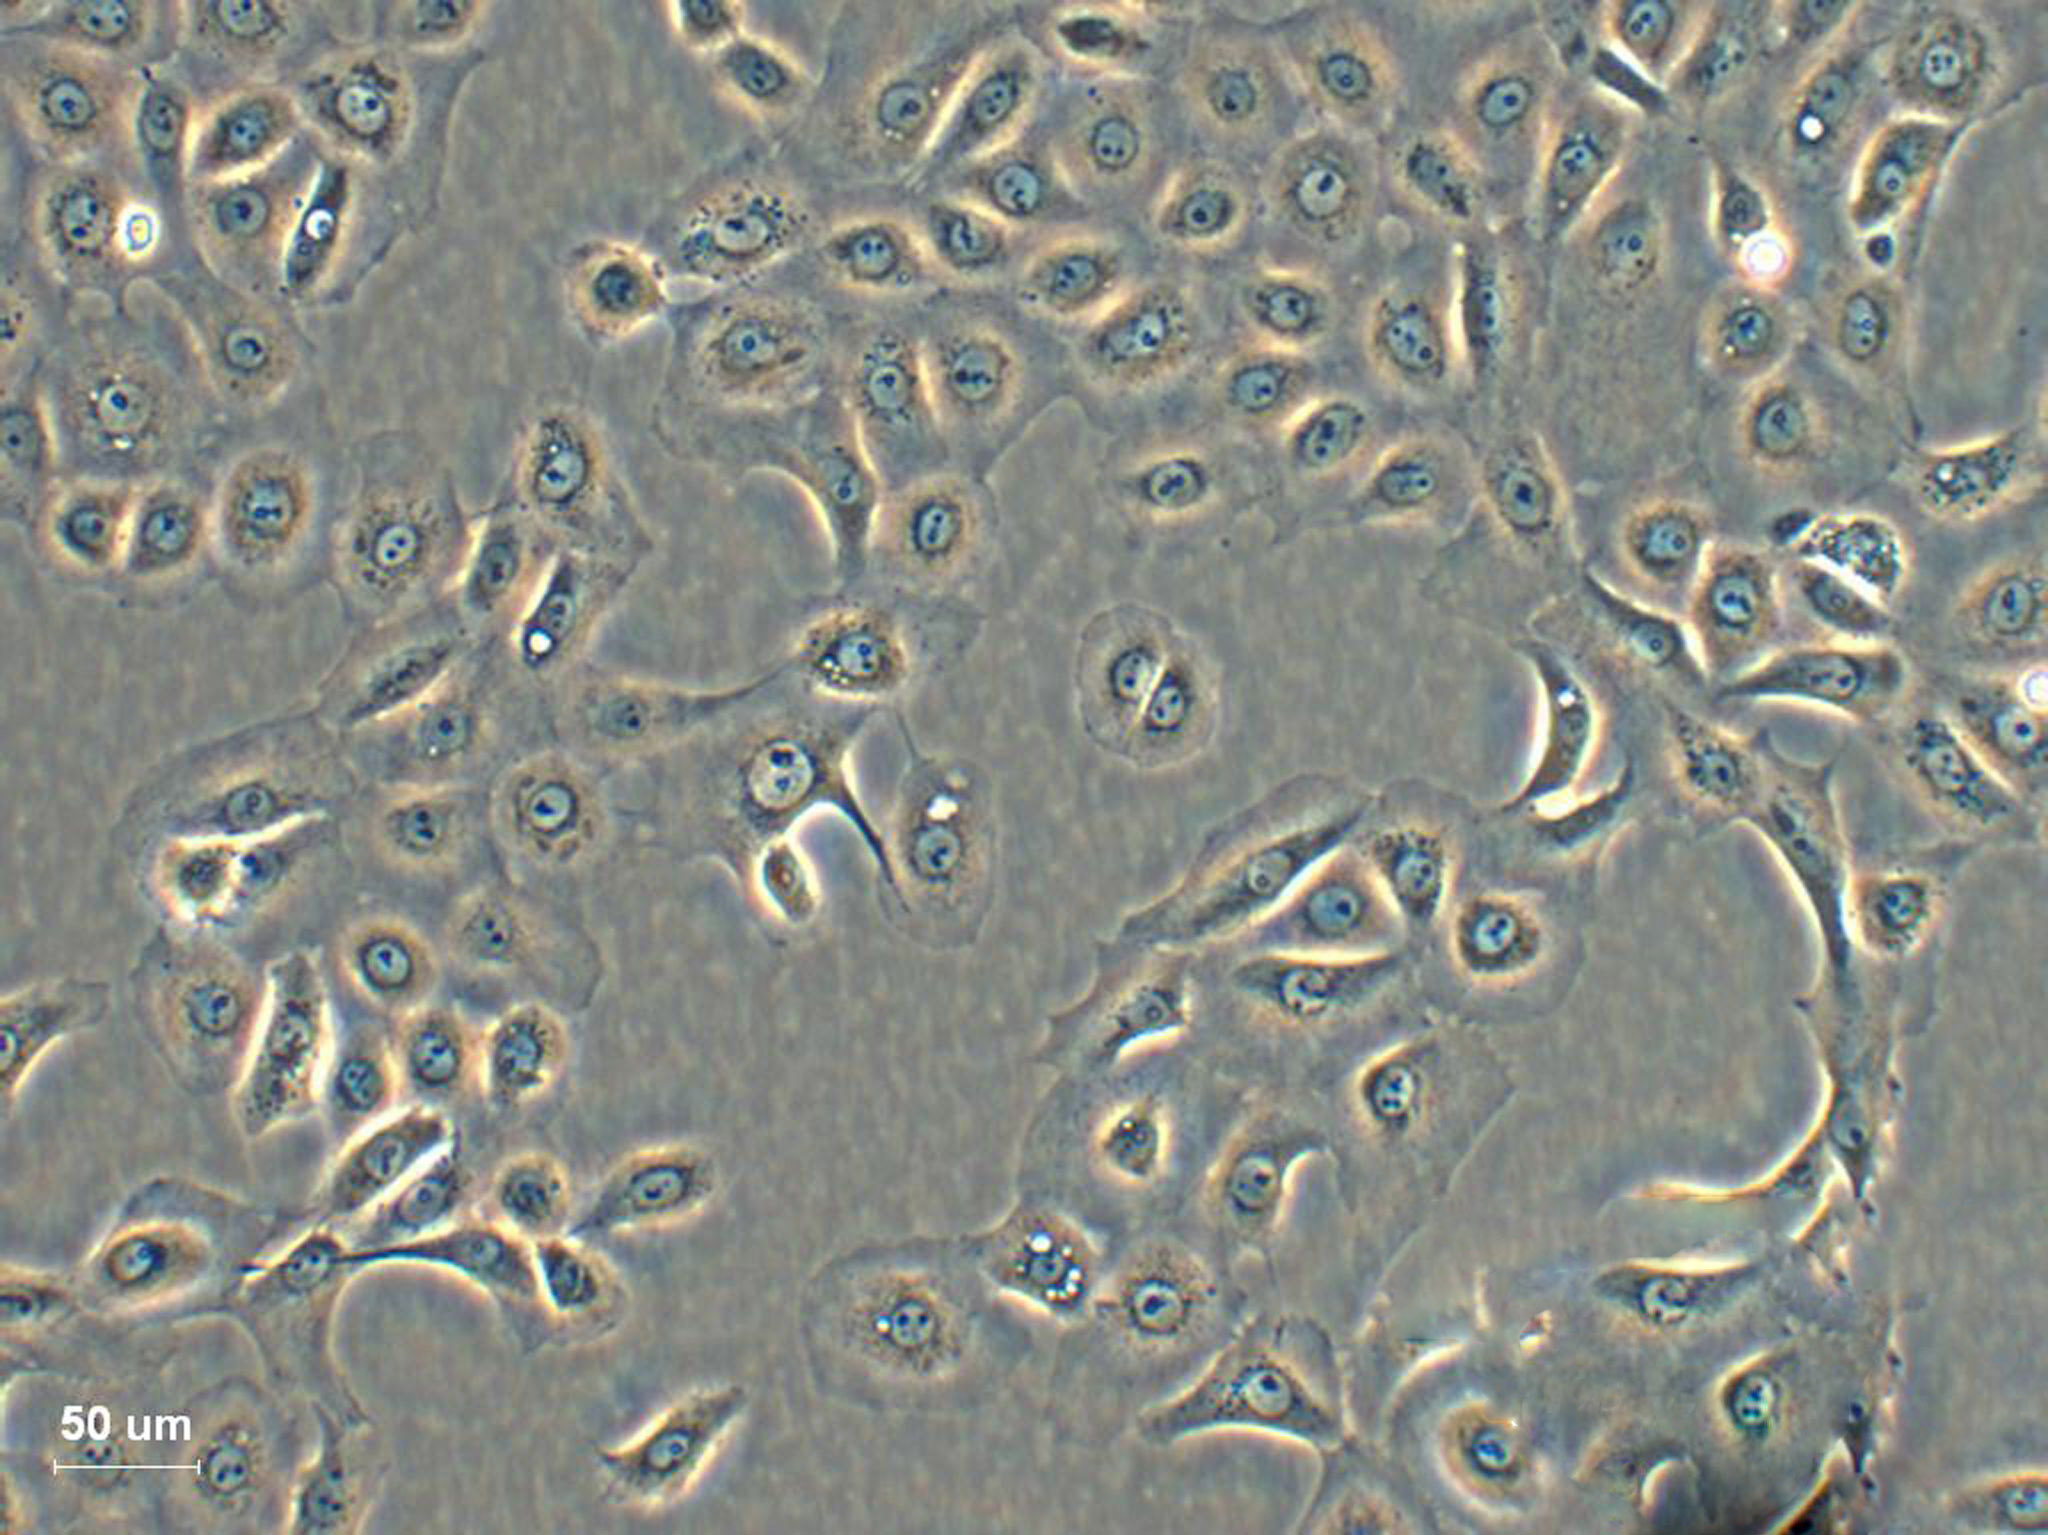 HCC1806 Cells|人乳腺鳞状癌可传代细胞系,HCC1806 Cells